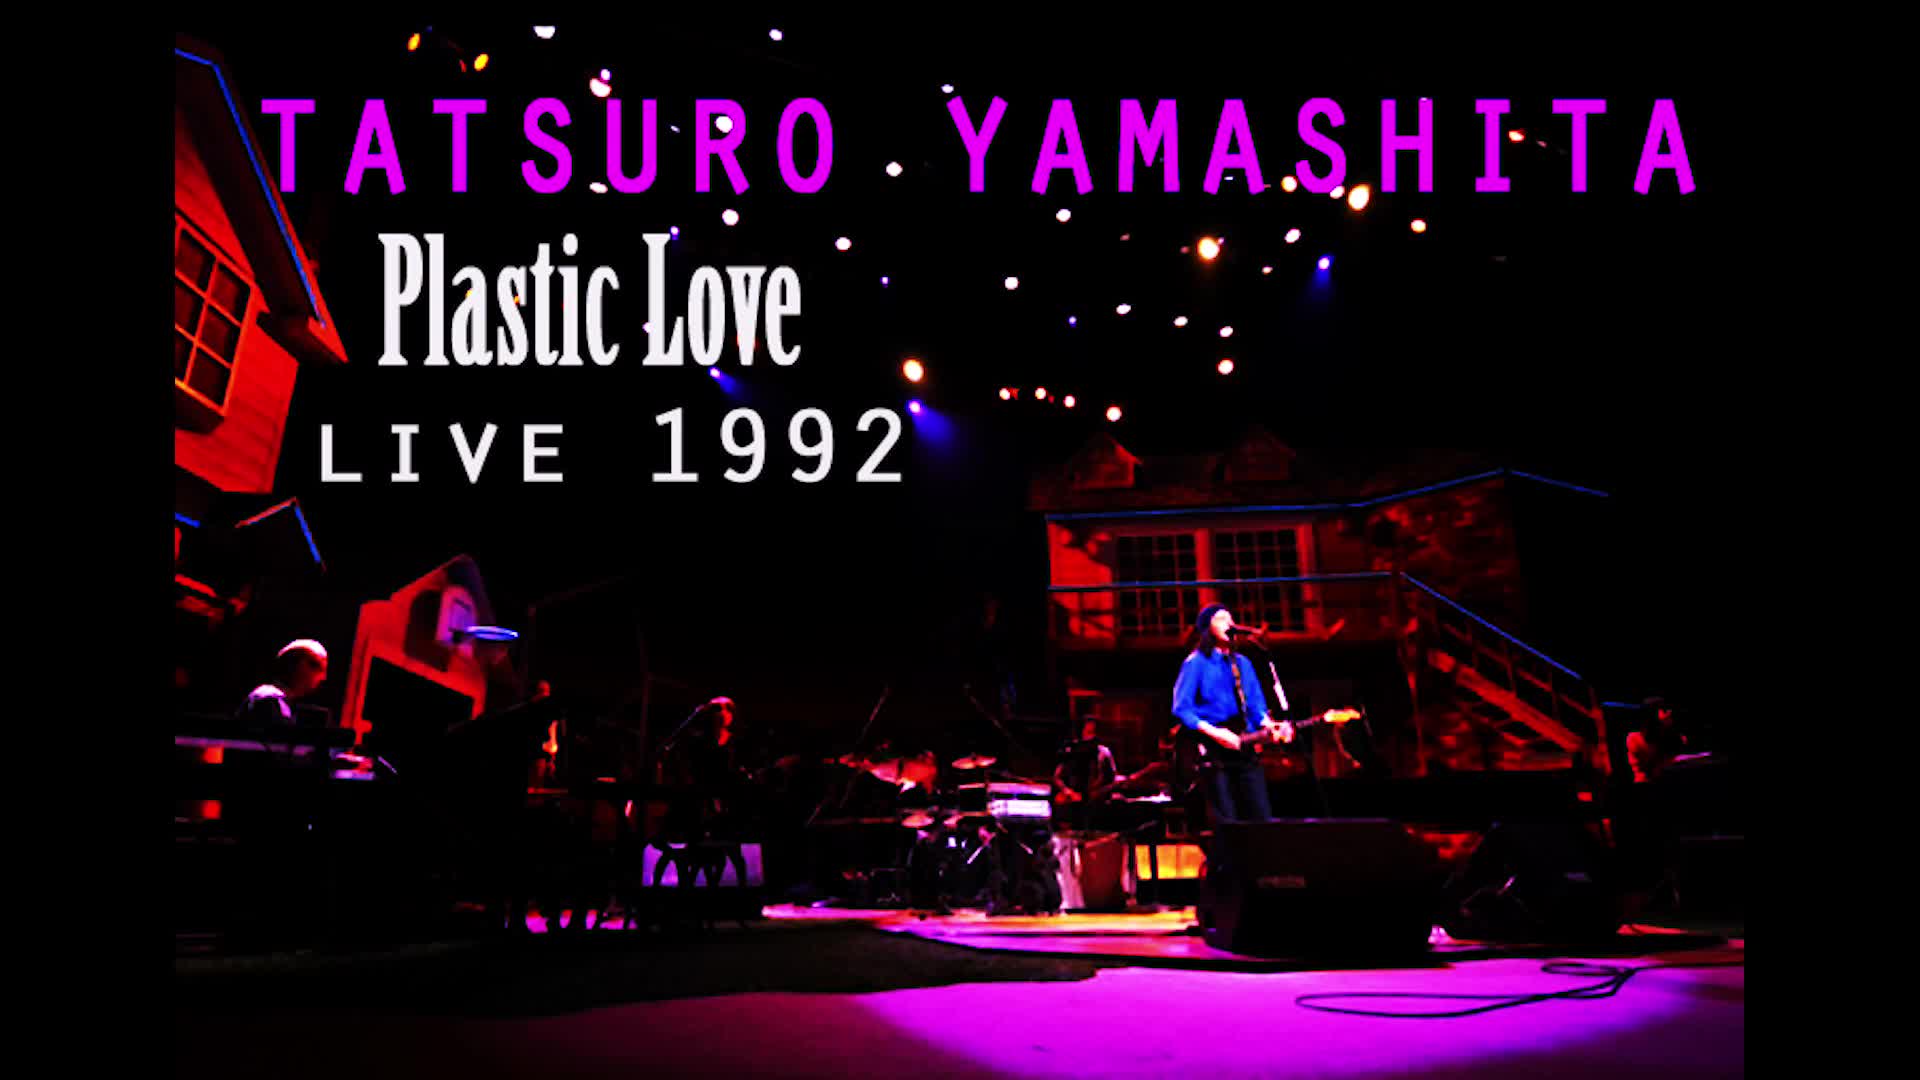 mariya takeuchi plastic love live